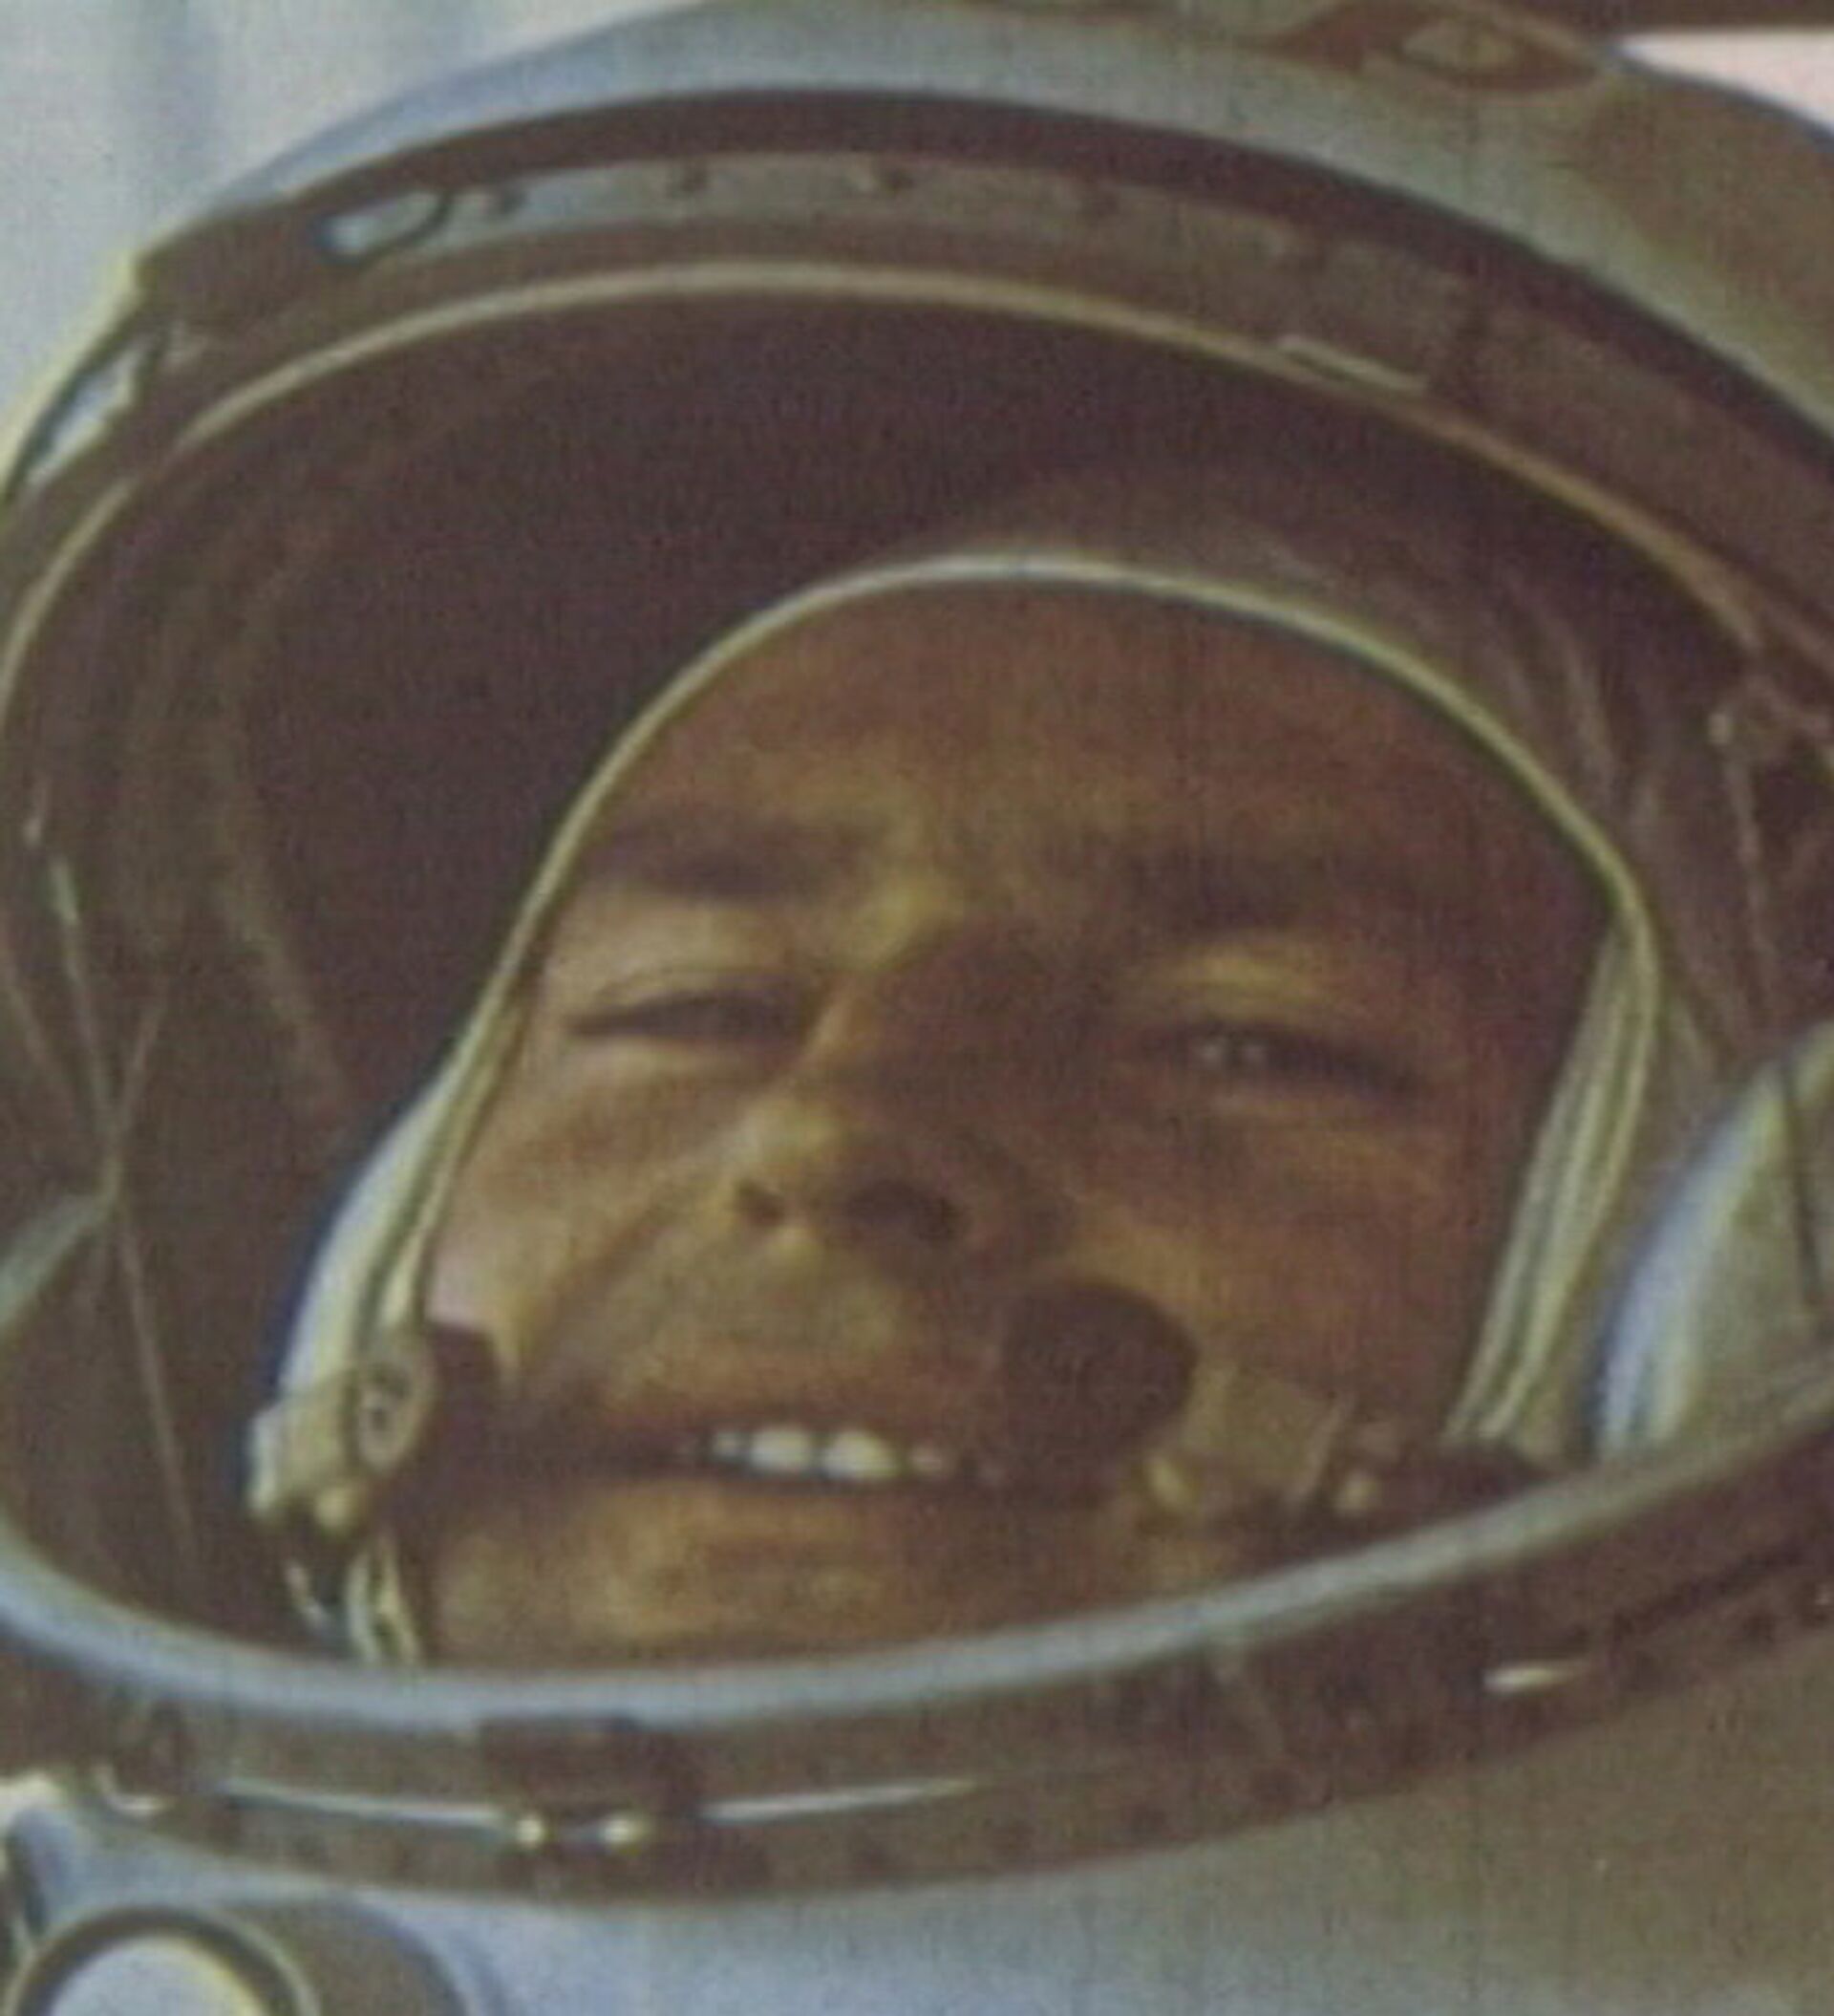 Космонавты были в полете 290 часов. Полёт Германа Титова архивные записи из кабины.